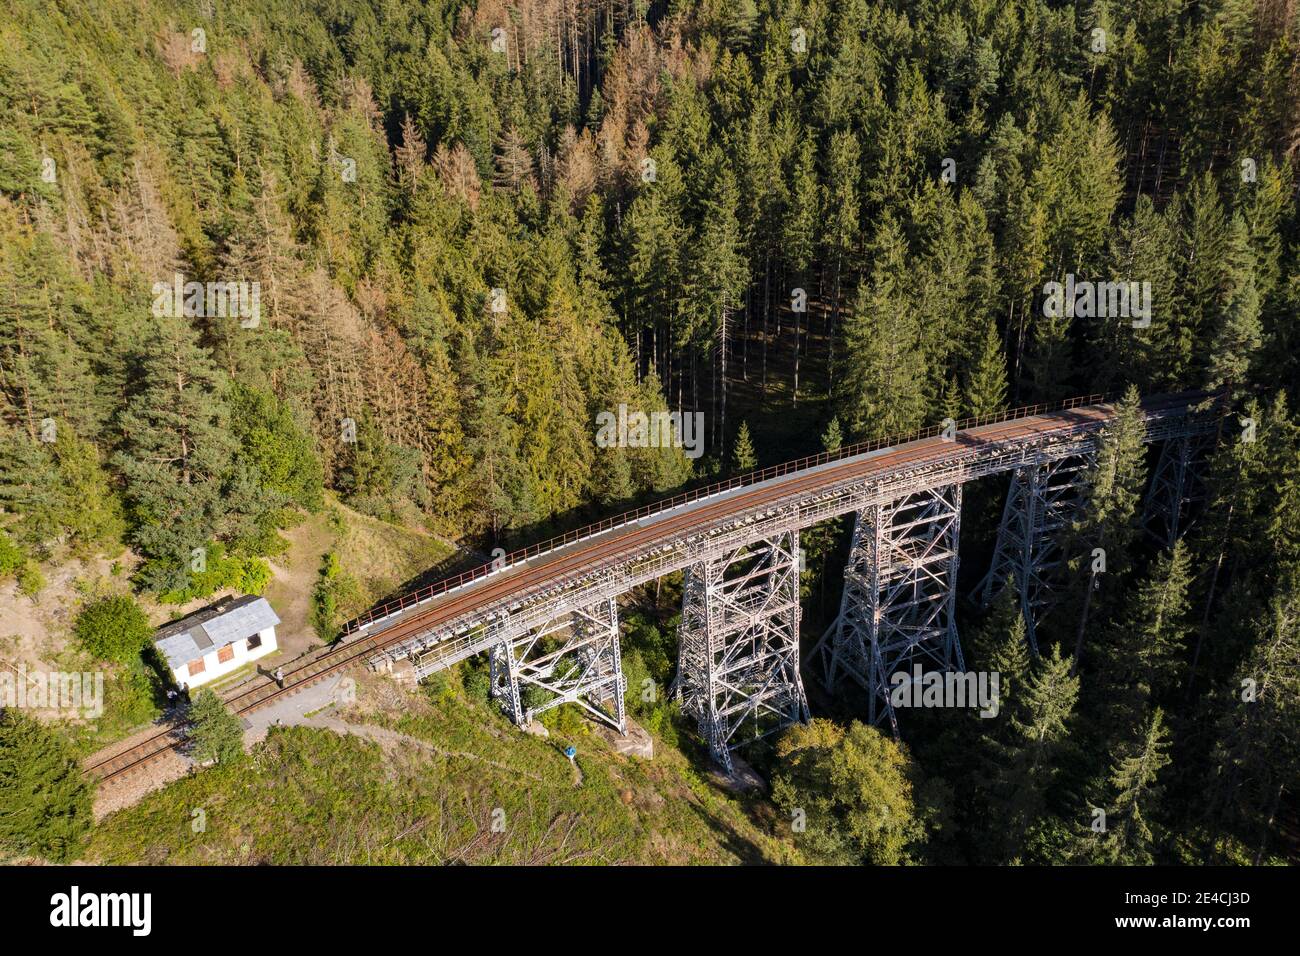 Pont de chemin de fer, personnes, forêt, vue aérienne Banque D'Images